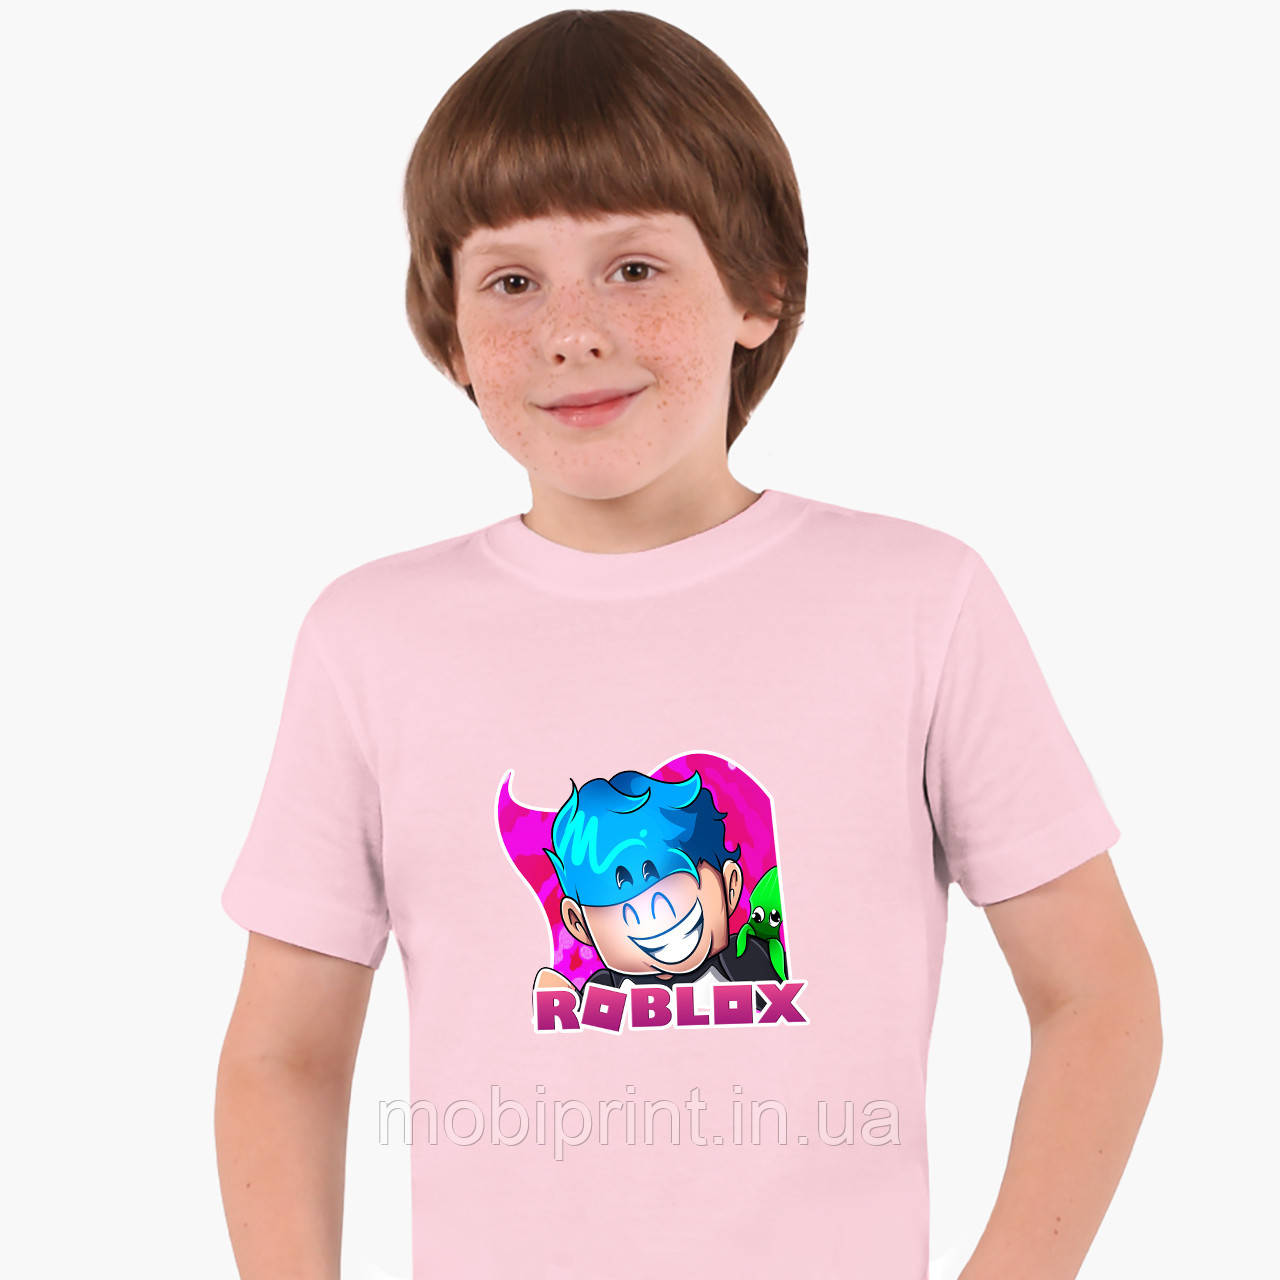 

Детская футболка для мальчиков Роблокс (Roblox) (25186-1223) Розовый 112